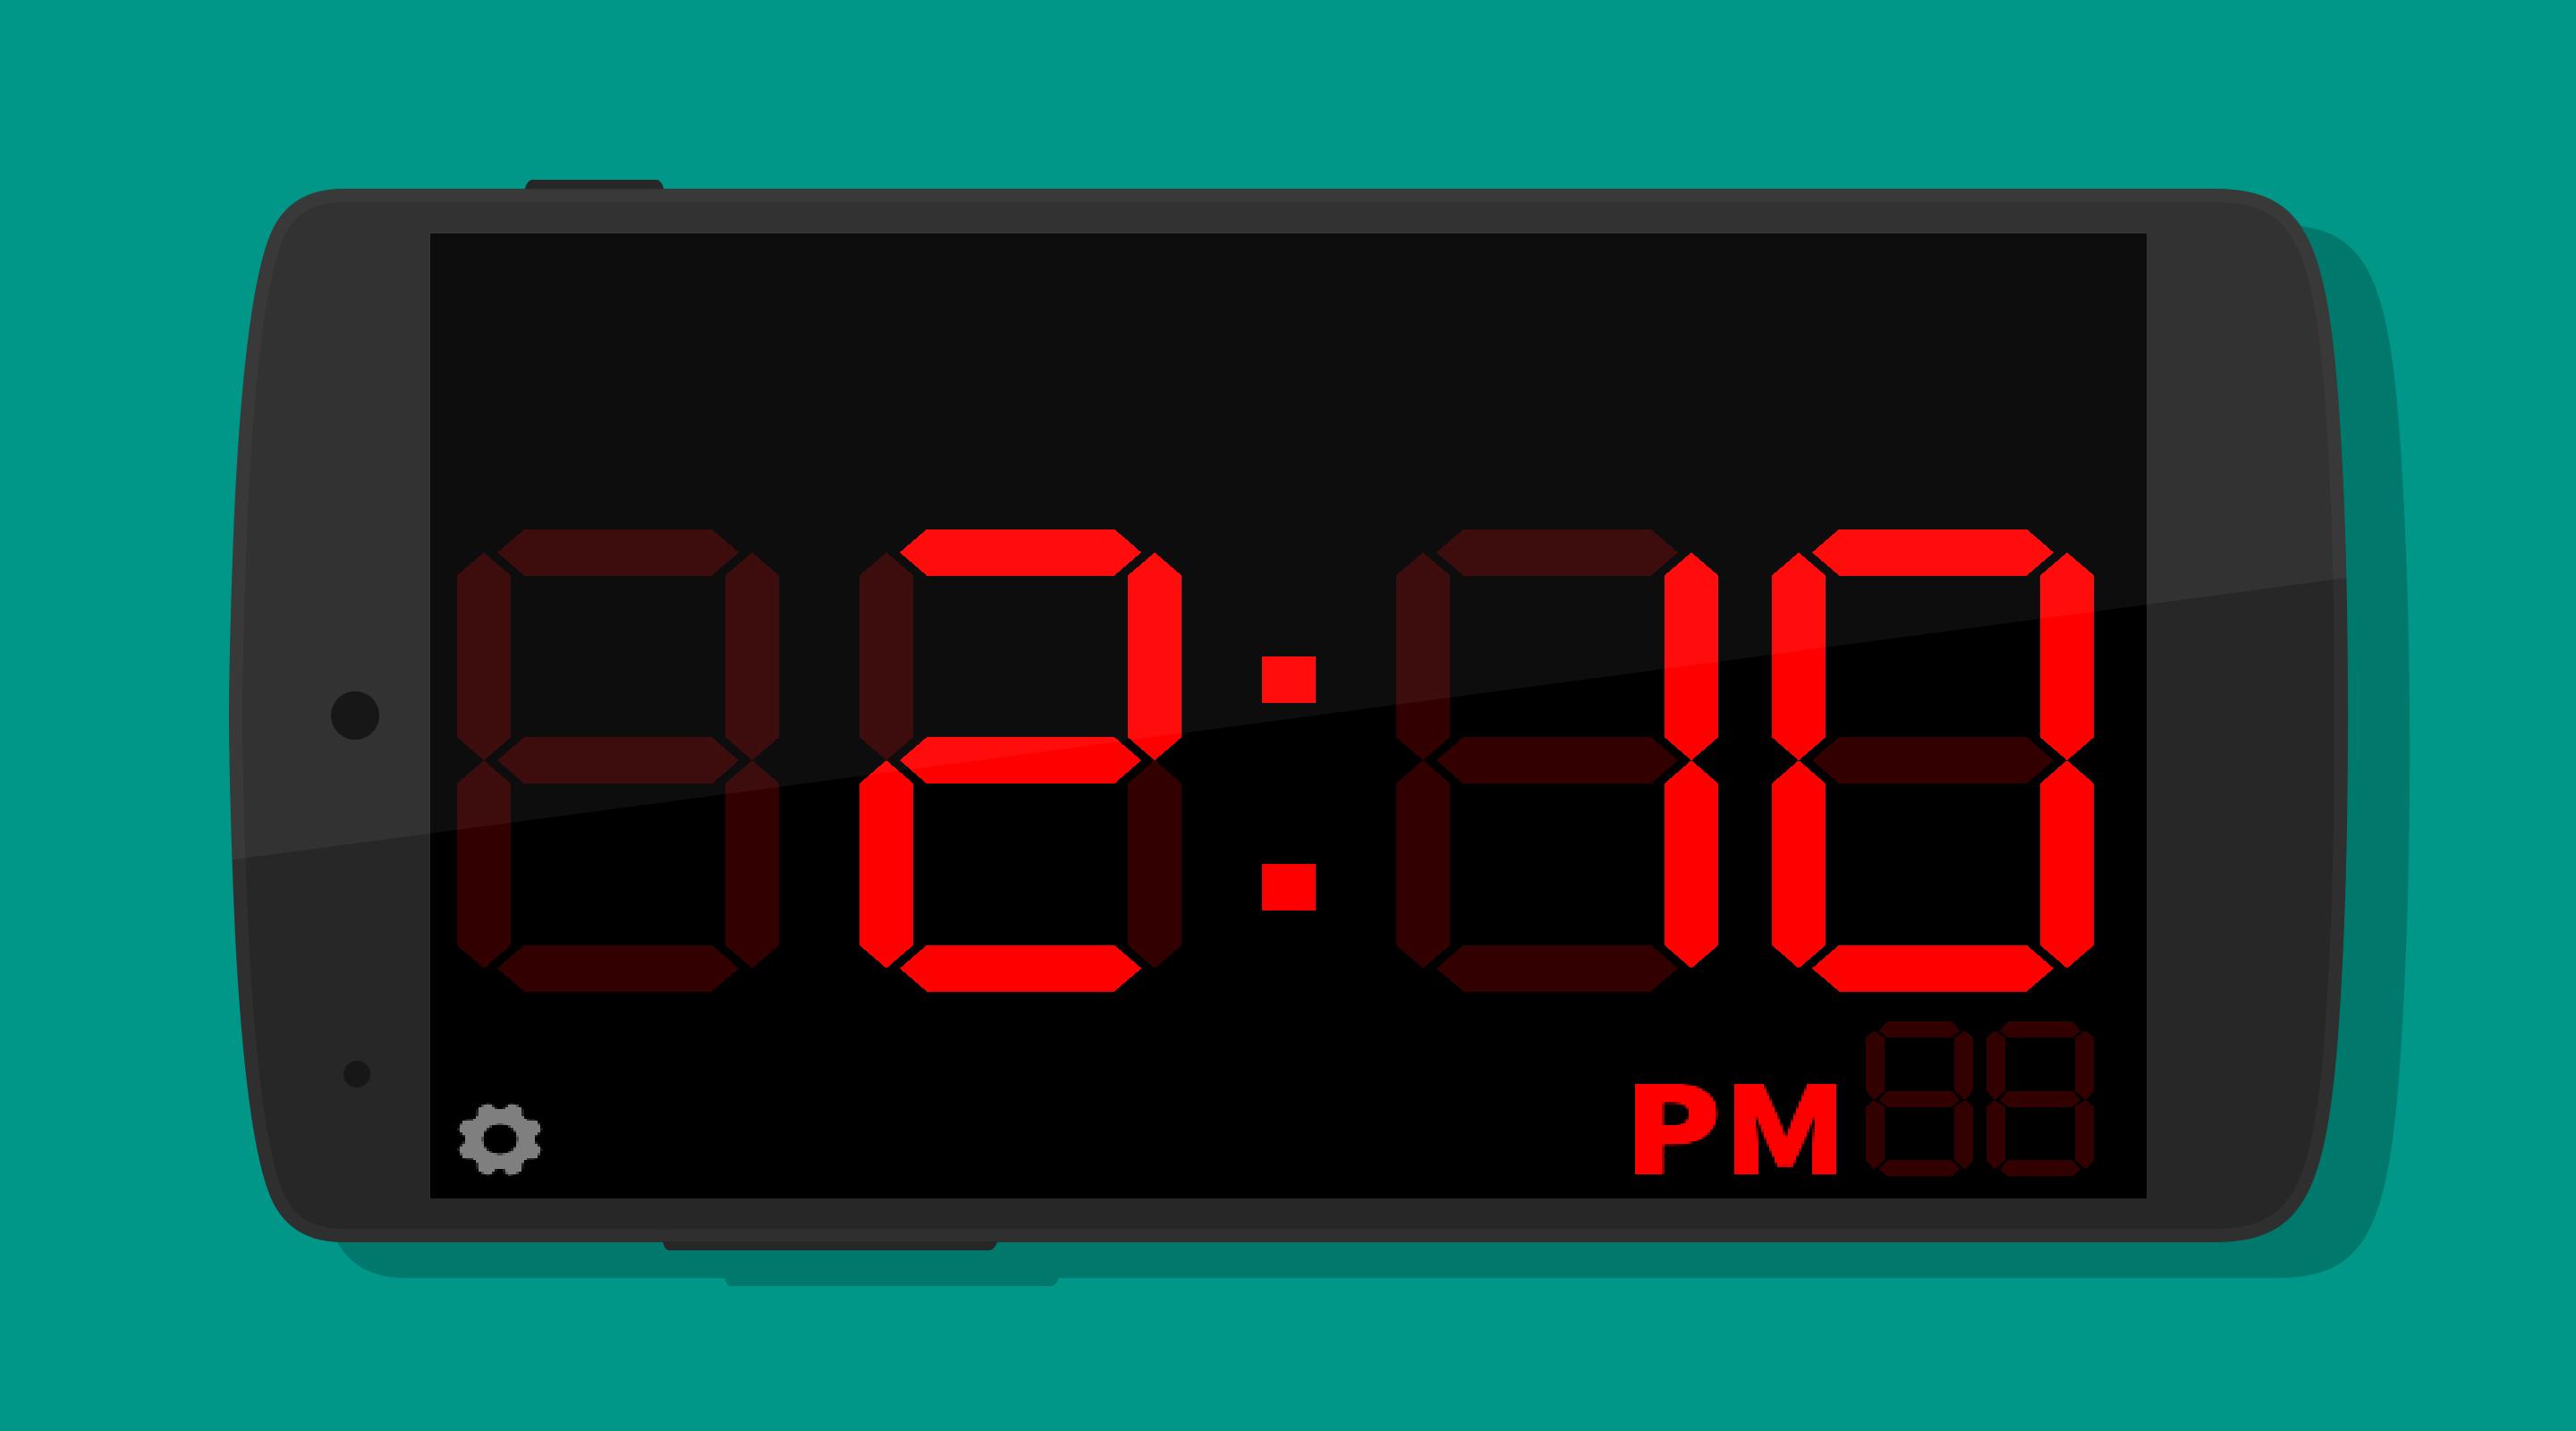 Время 14 39. Часы Digital Clock 200730138828.4. Электронные часы диджитал клок 1018. Циферблат электронных часов. Электронные часы 10:00.